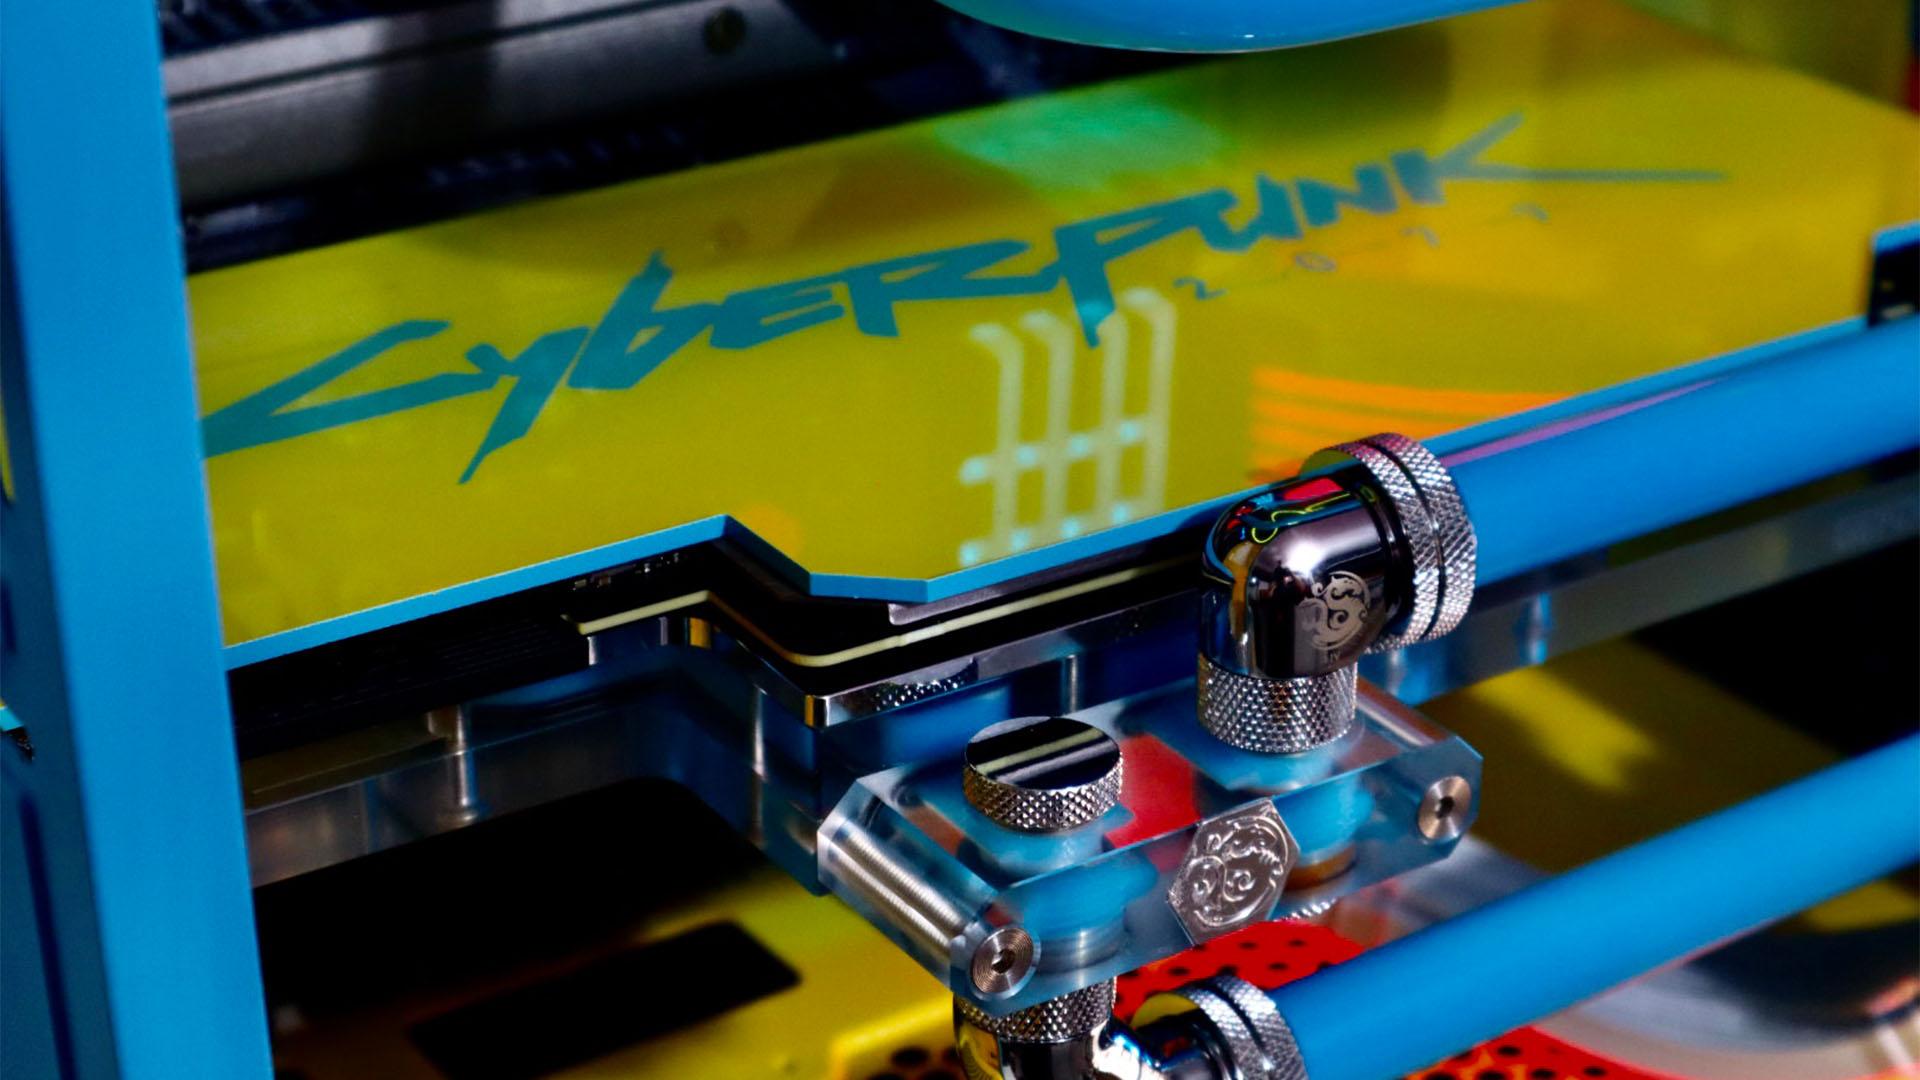 Der Cyberpunk 2077-Gaming-PC mit einer maßgeschneiderten gelb-blauen GPU-Rückplatte